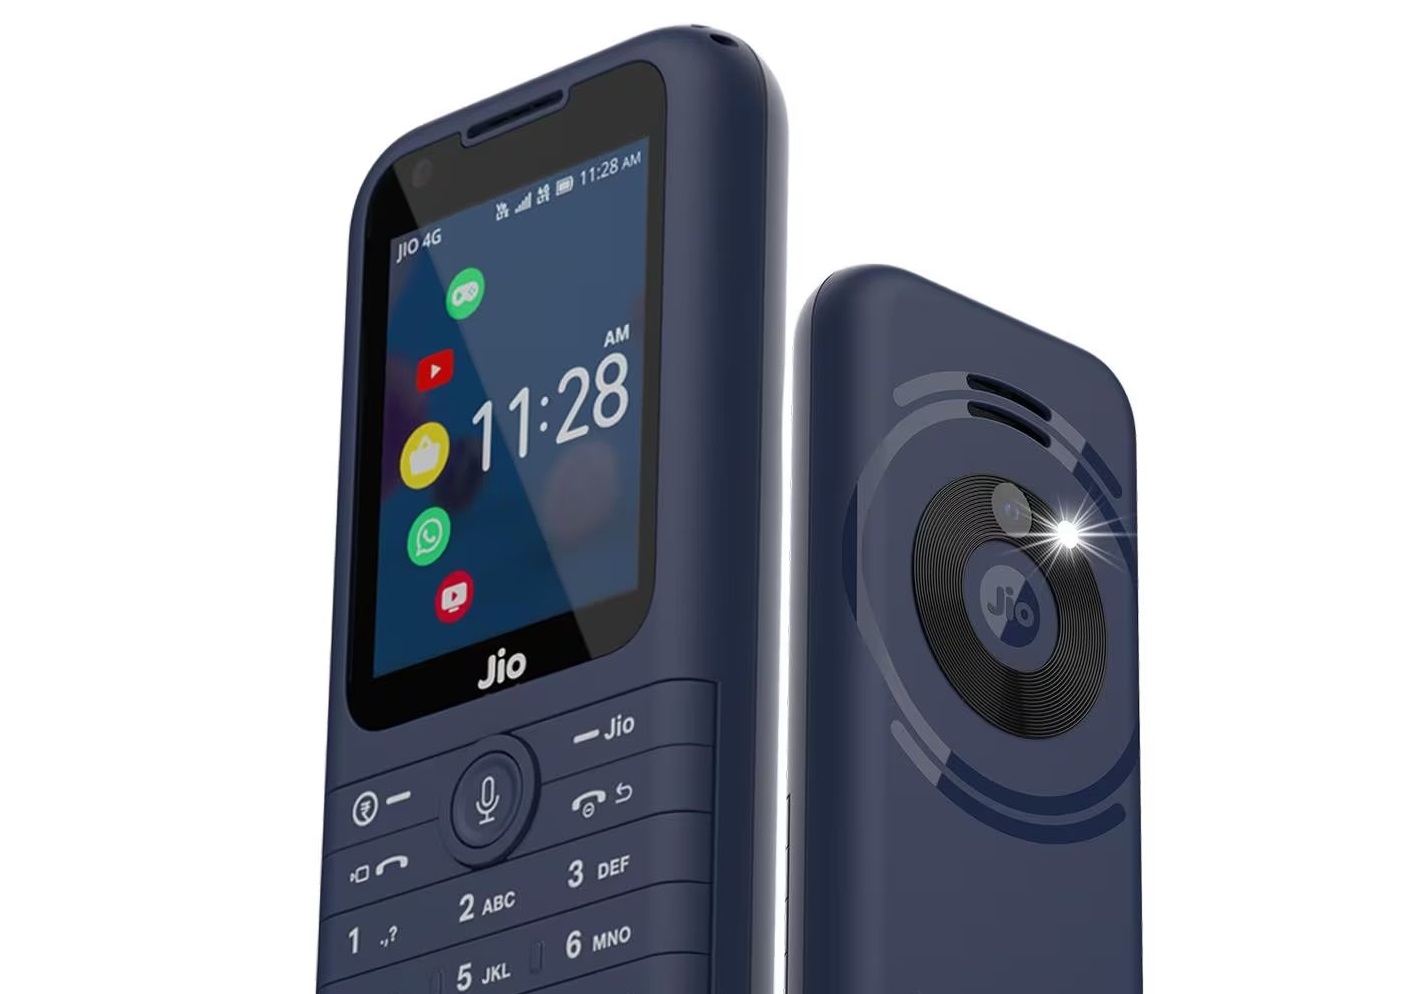 स्मार्ट फीचर के साथ JioPhone Prima 4G लॉन्च, जानिए इस कीपैड फोन की कीमत और खूबियों के बारे में…